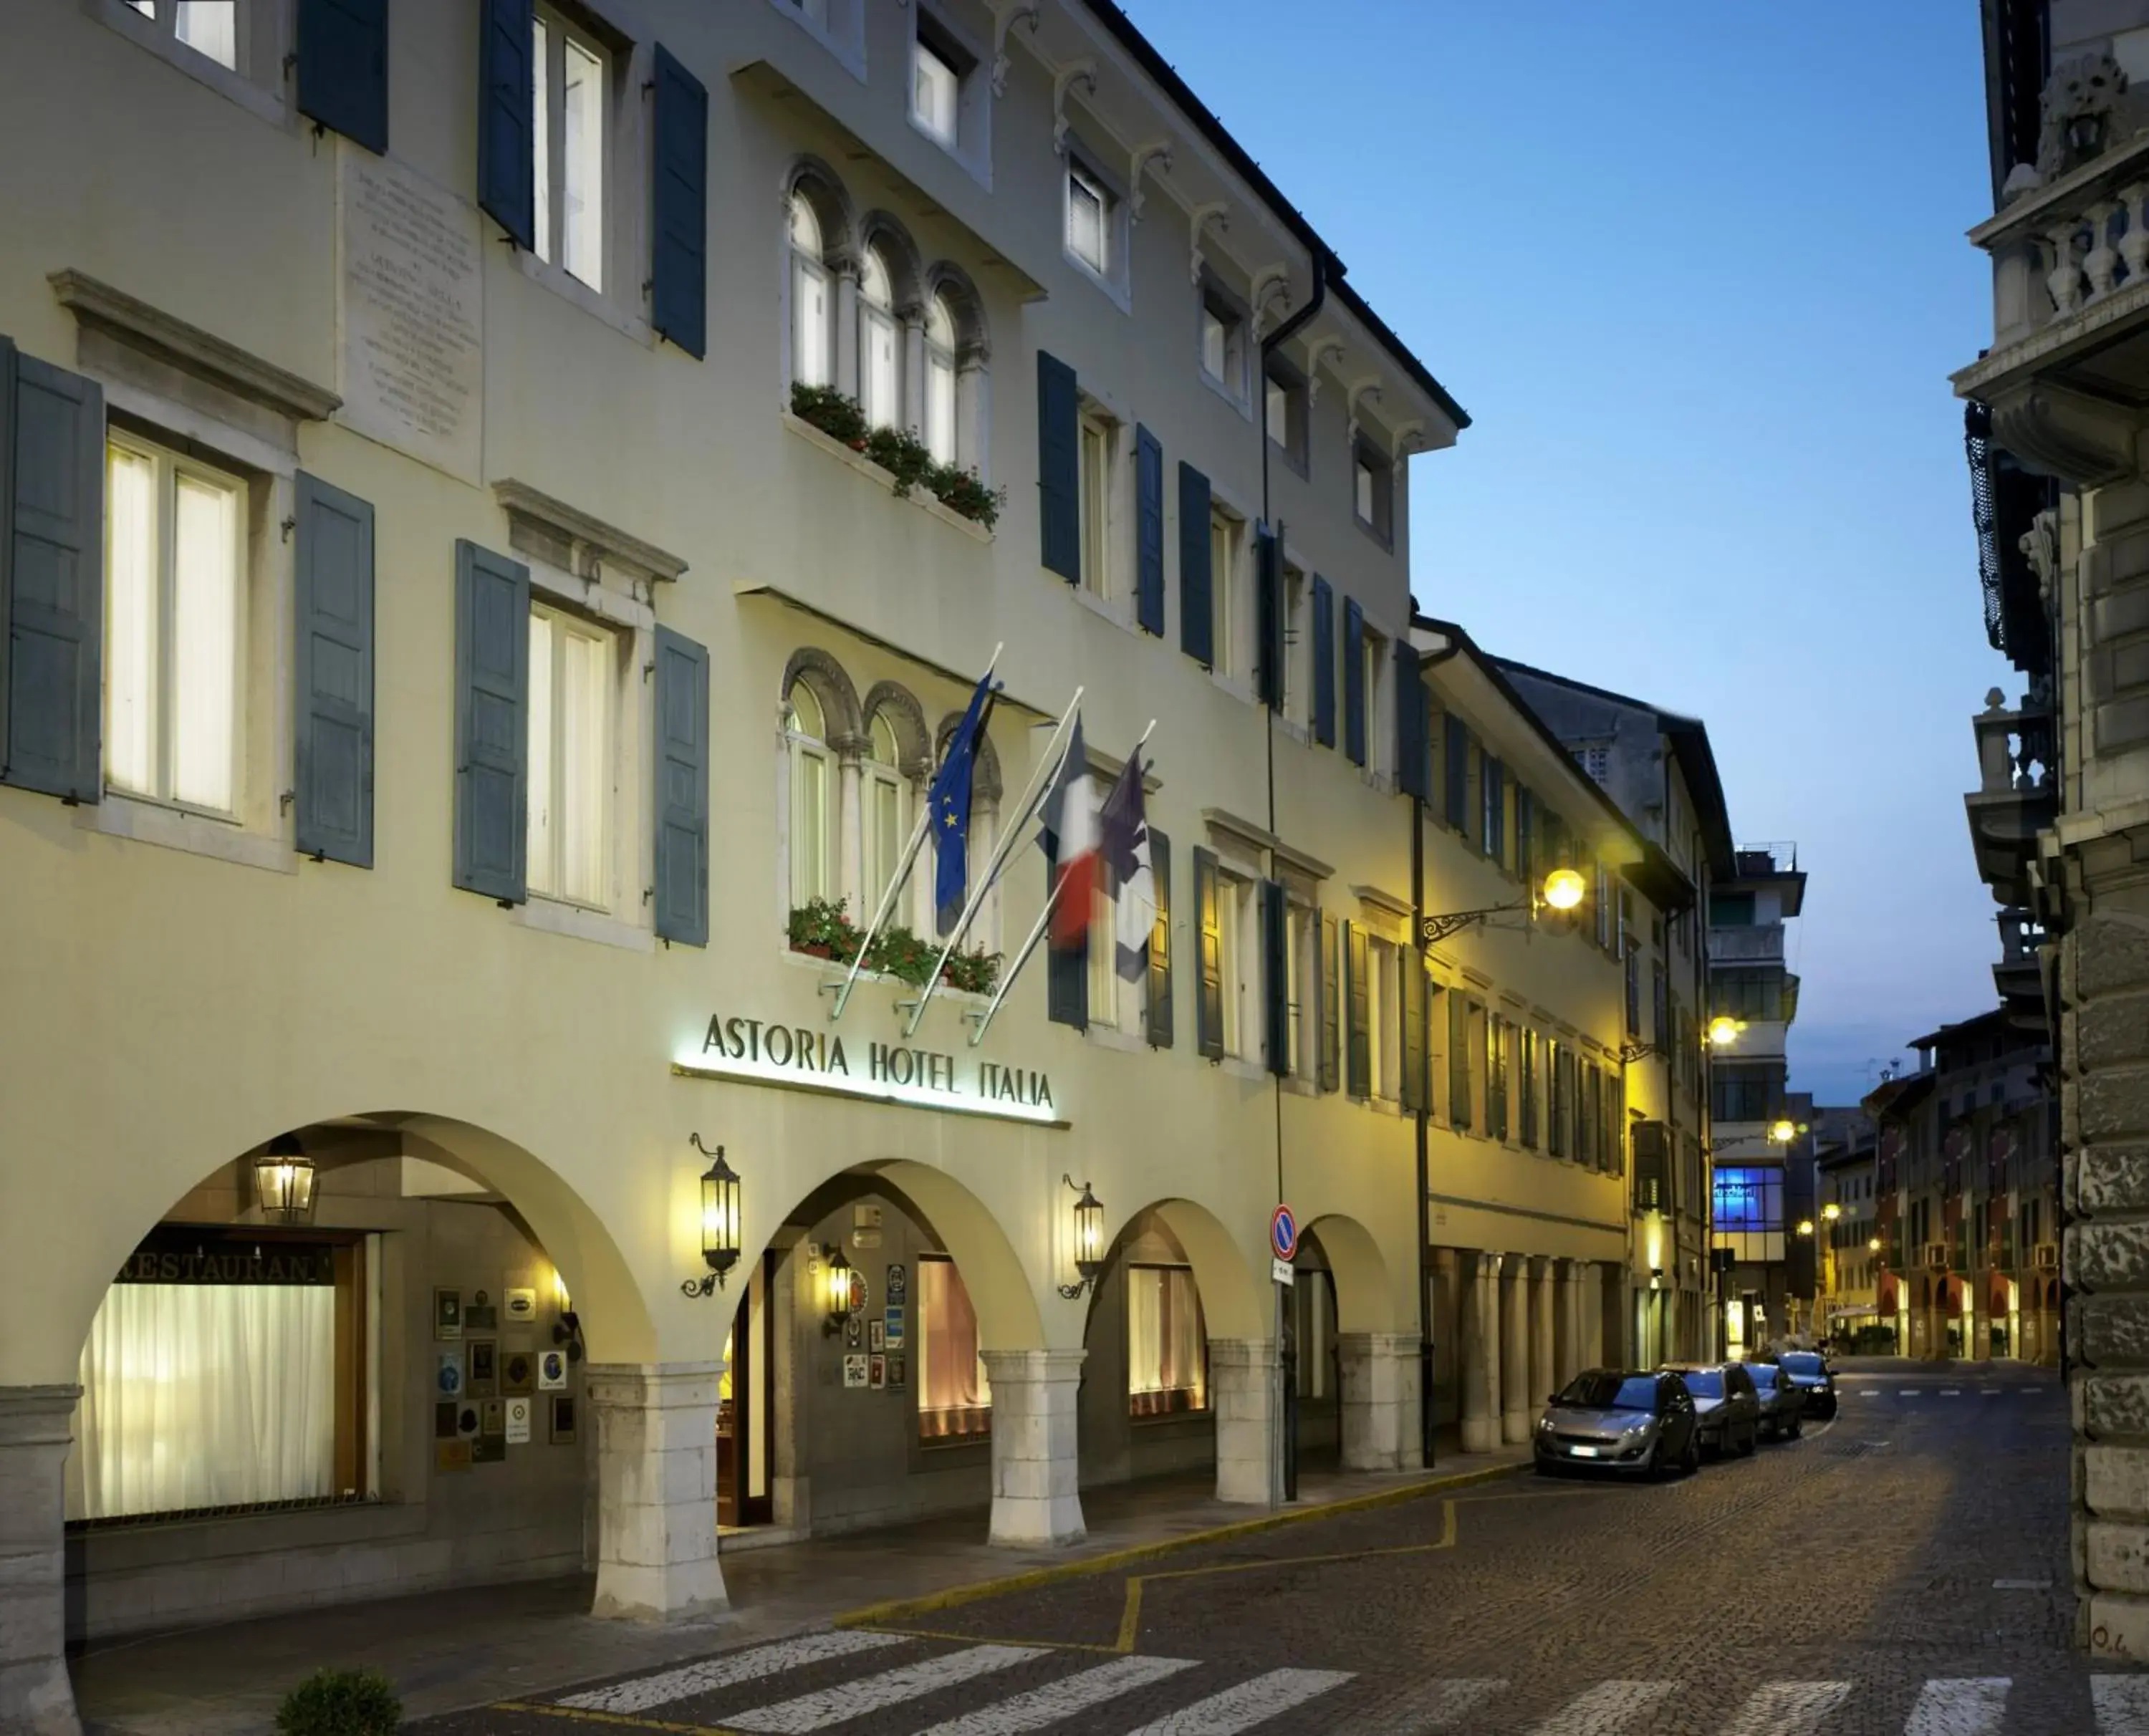 Facade/entrance in Astoria Hotel Italia